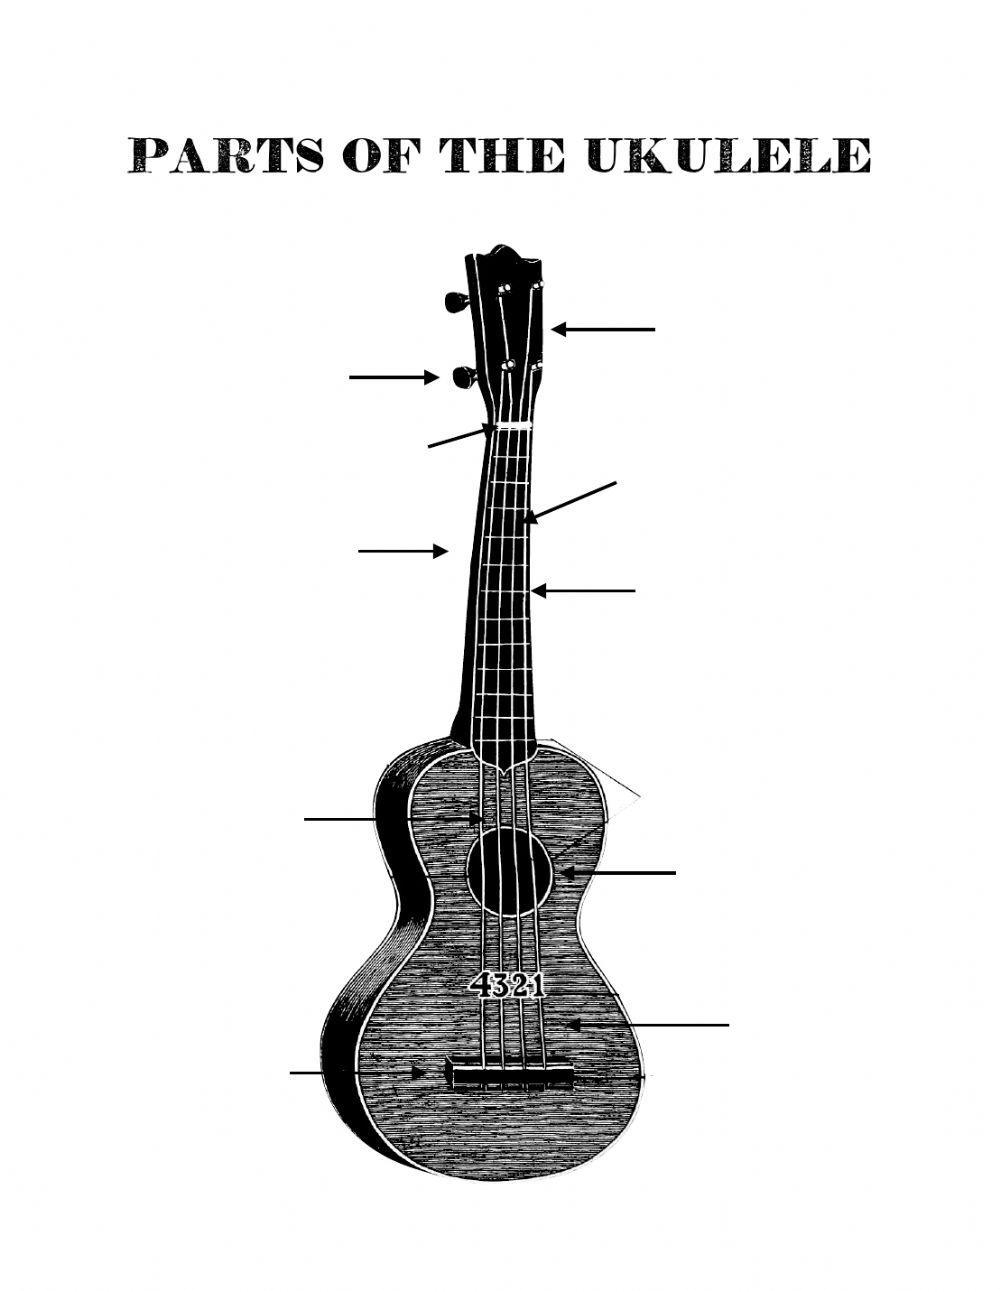 Parts of the Ukulele